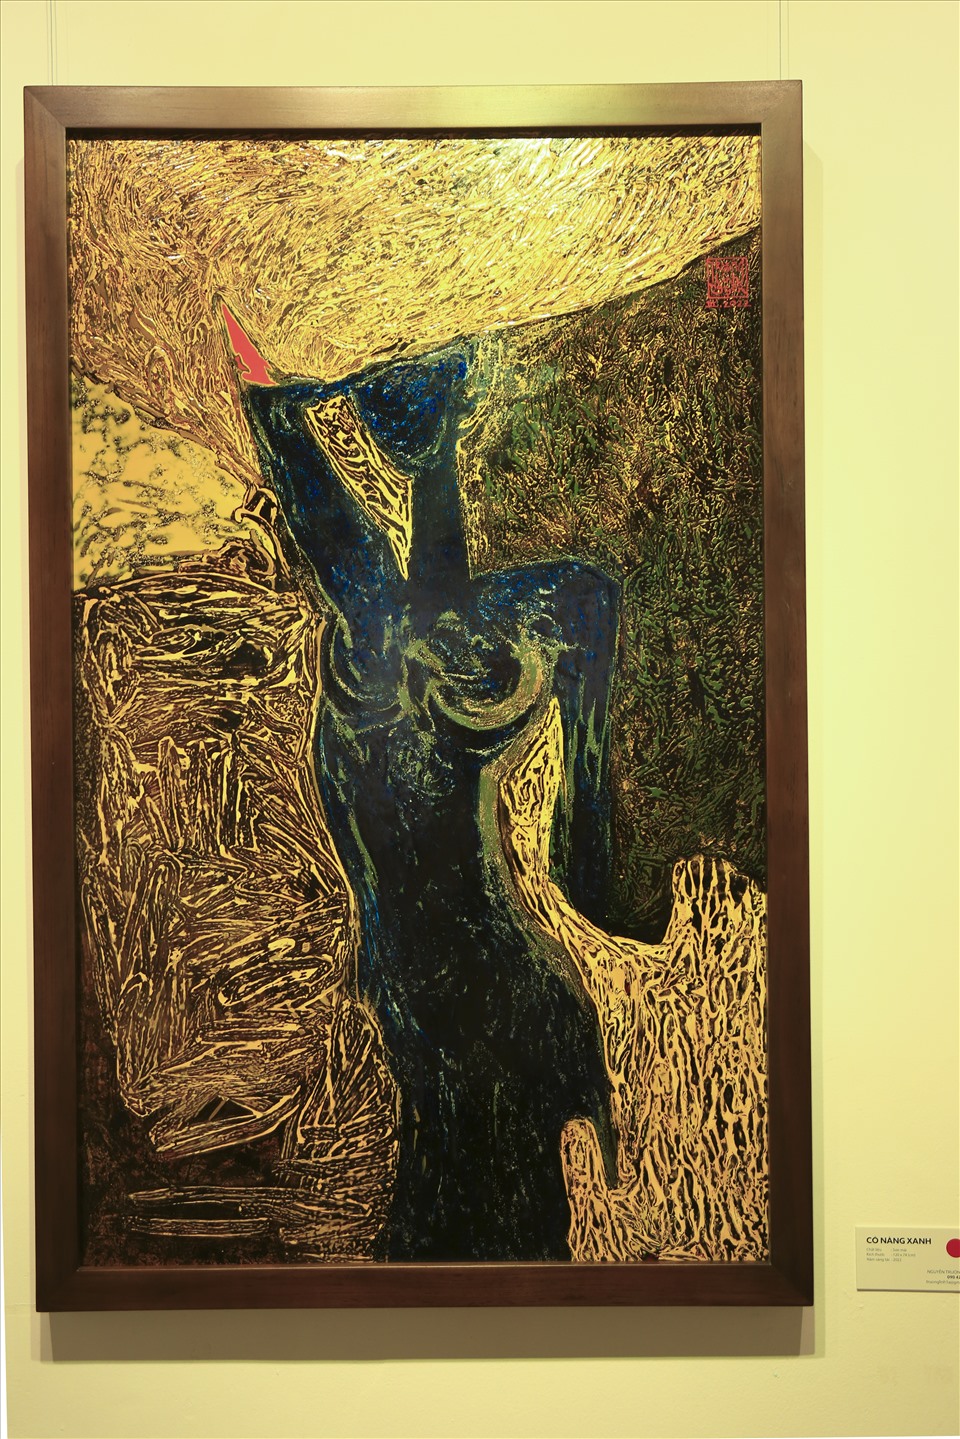 Bức tranh Cô Nàng Xanh của họa sĩ Nguyễn Trường Linh là bức tranh để lại ấn tượng lớn cho khán giả đến xem bởi sự sống động trong cách phối màu và nét hiện đại được thể hiện.